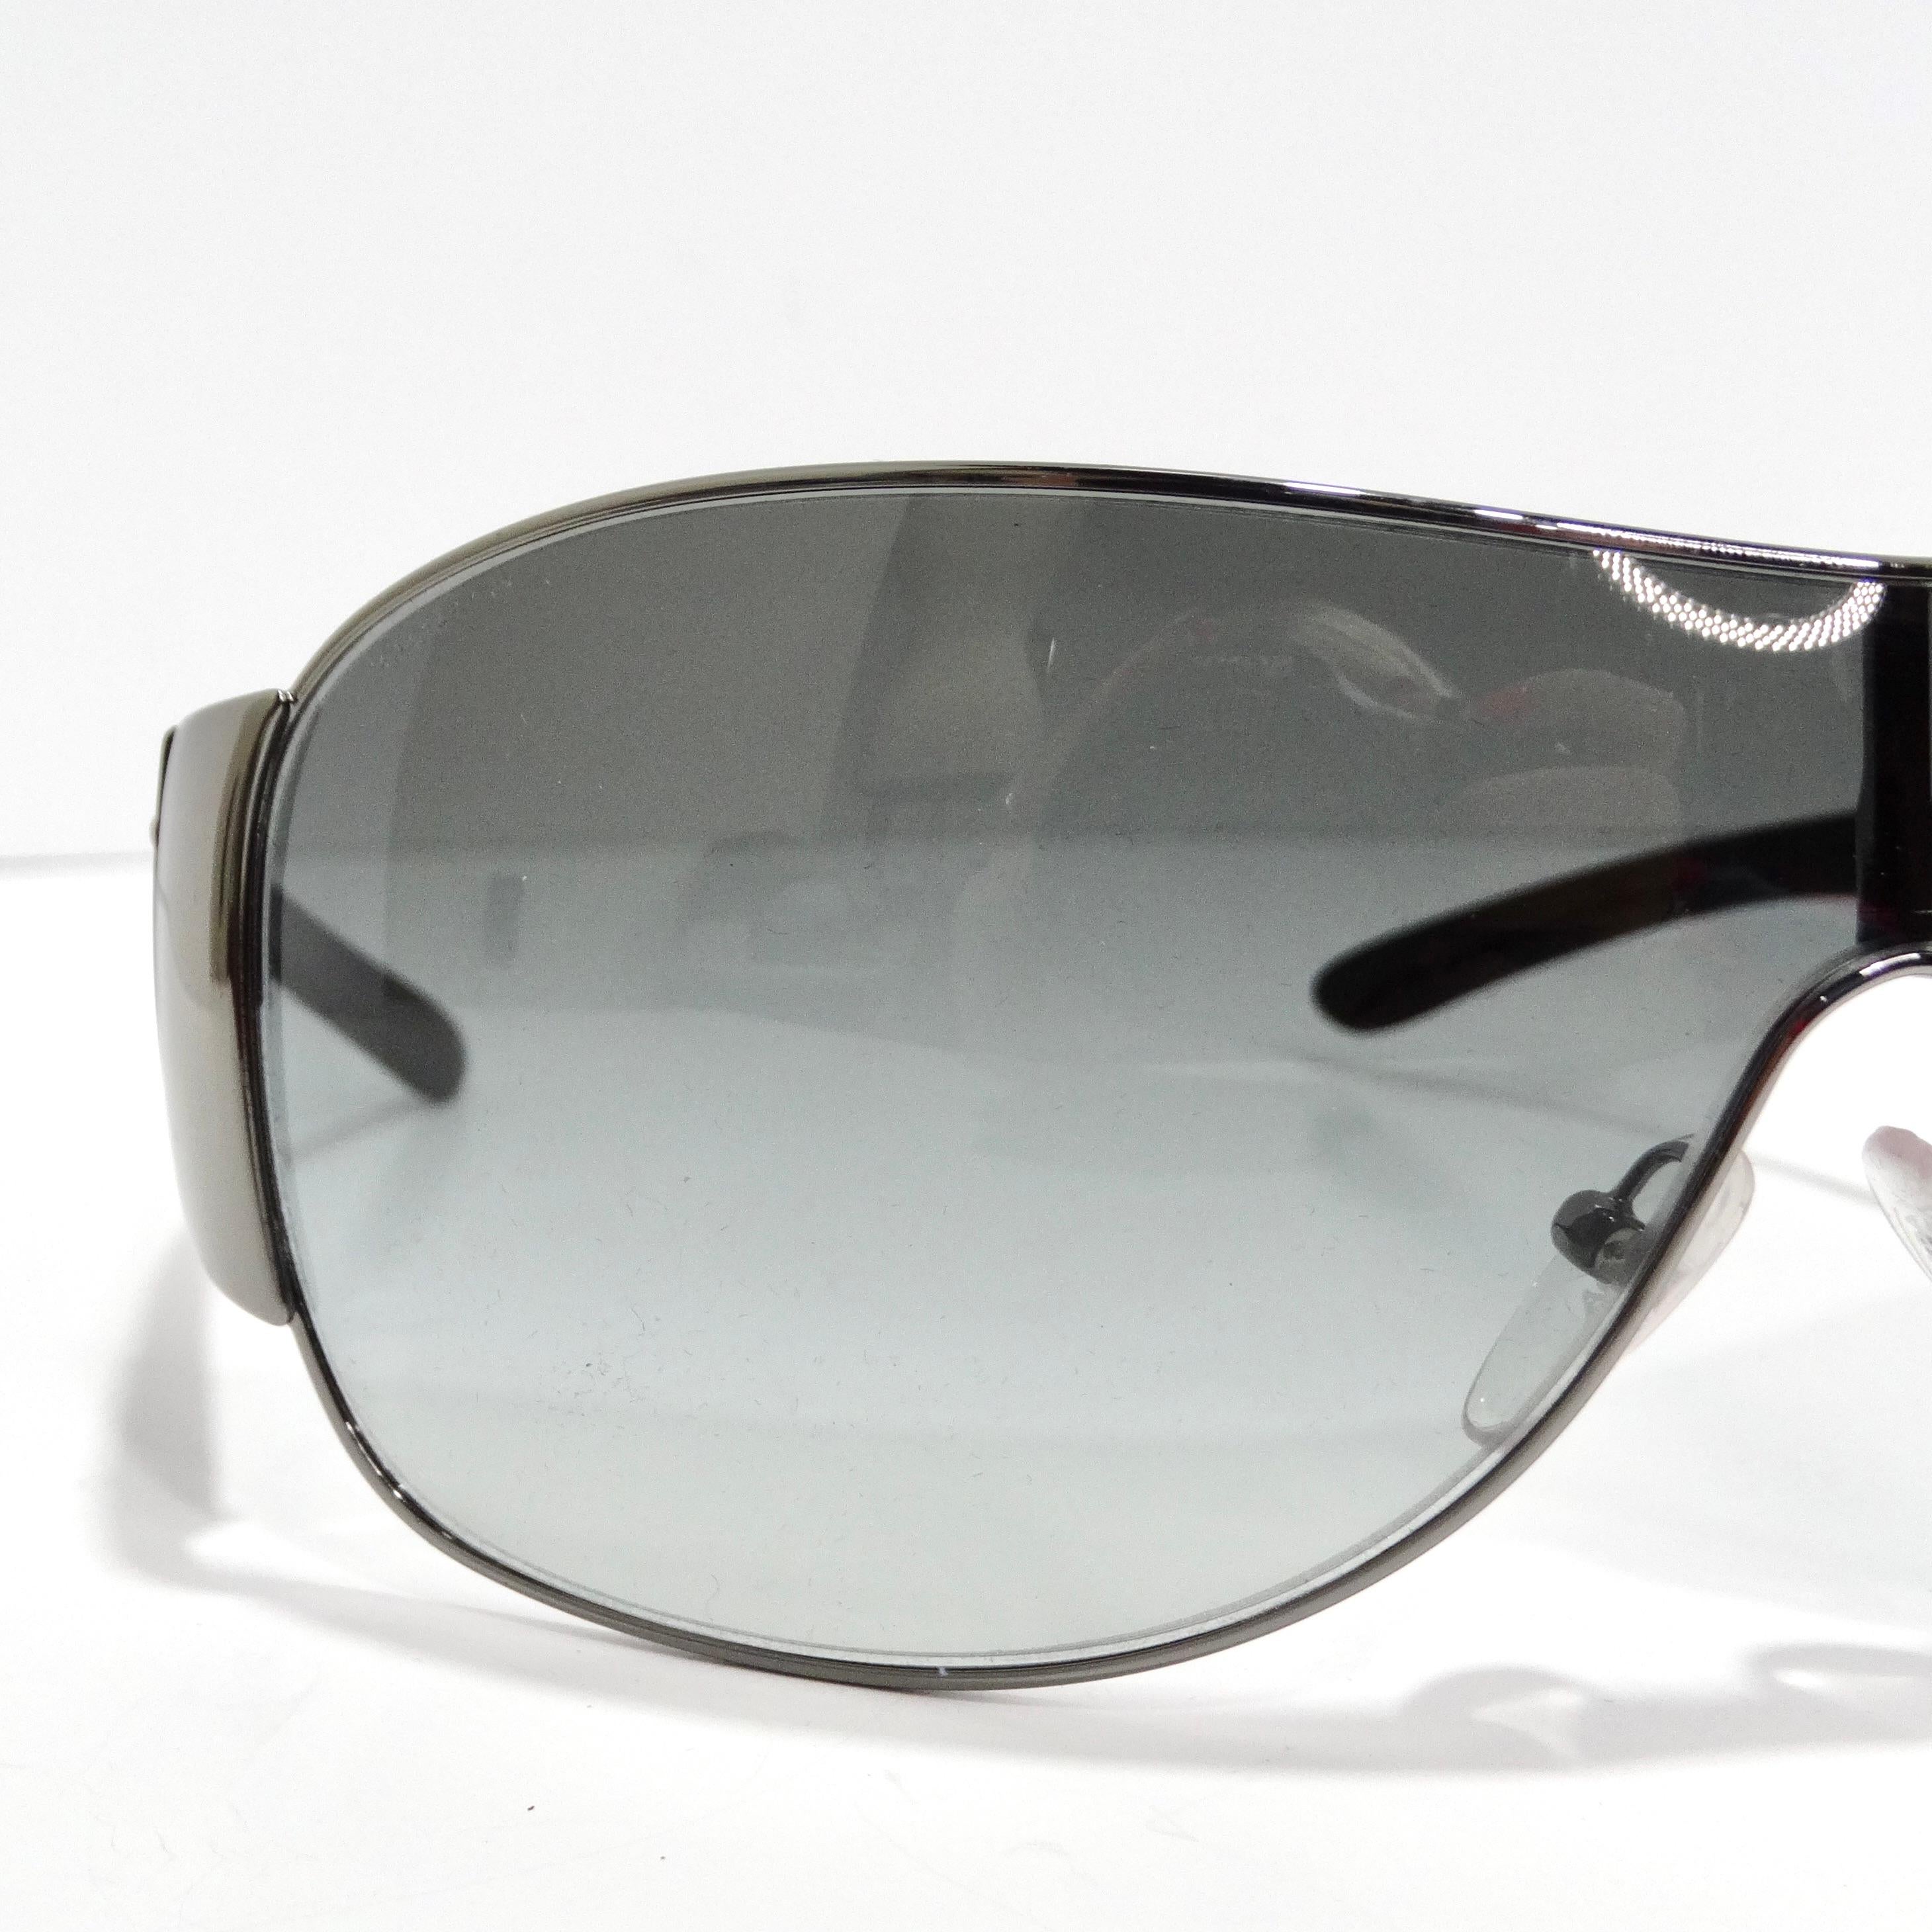 Les lunettes de soleil Prada 1990 Black Shield sont la quintessence du chic des années 1990. Ces lunettes de soleil classiques de style bouclier sont dotées de fins bords argentés, de branches noires élégantes ornées de logos Prada argentés et de